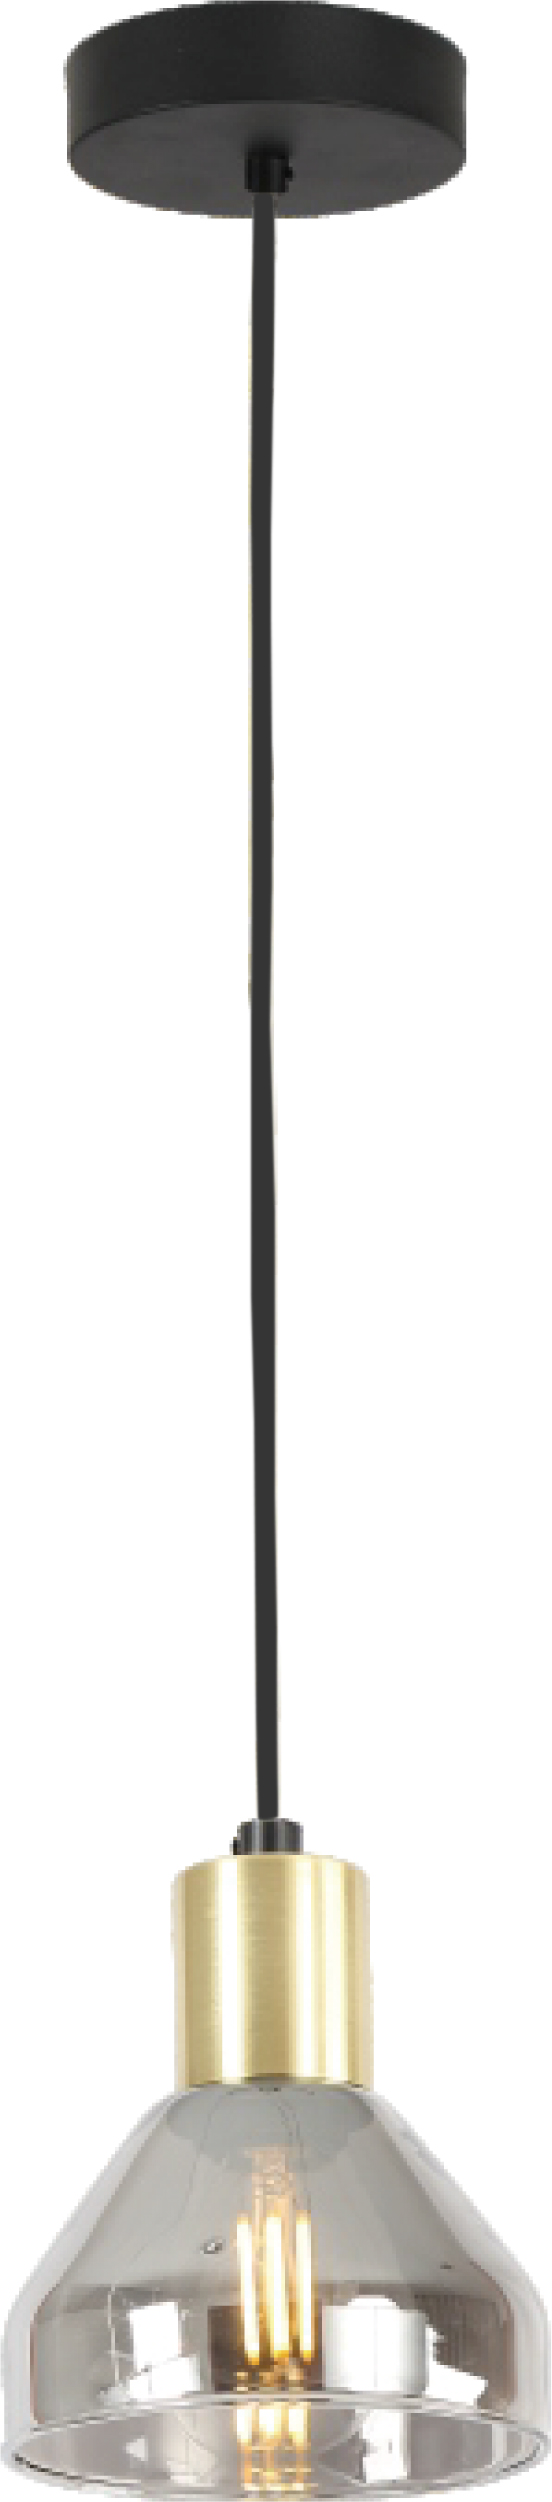 Светильник 10*10*120 см, 1*Е14 подвесной Rivoli Kassandra 3118-201, черный, латунь